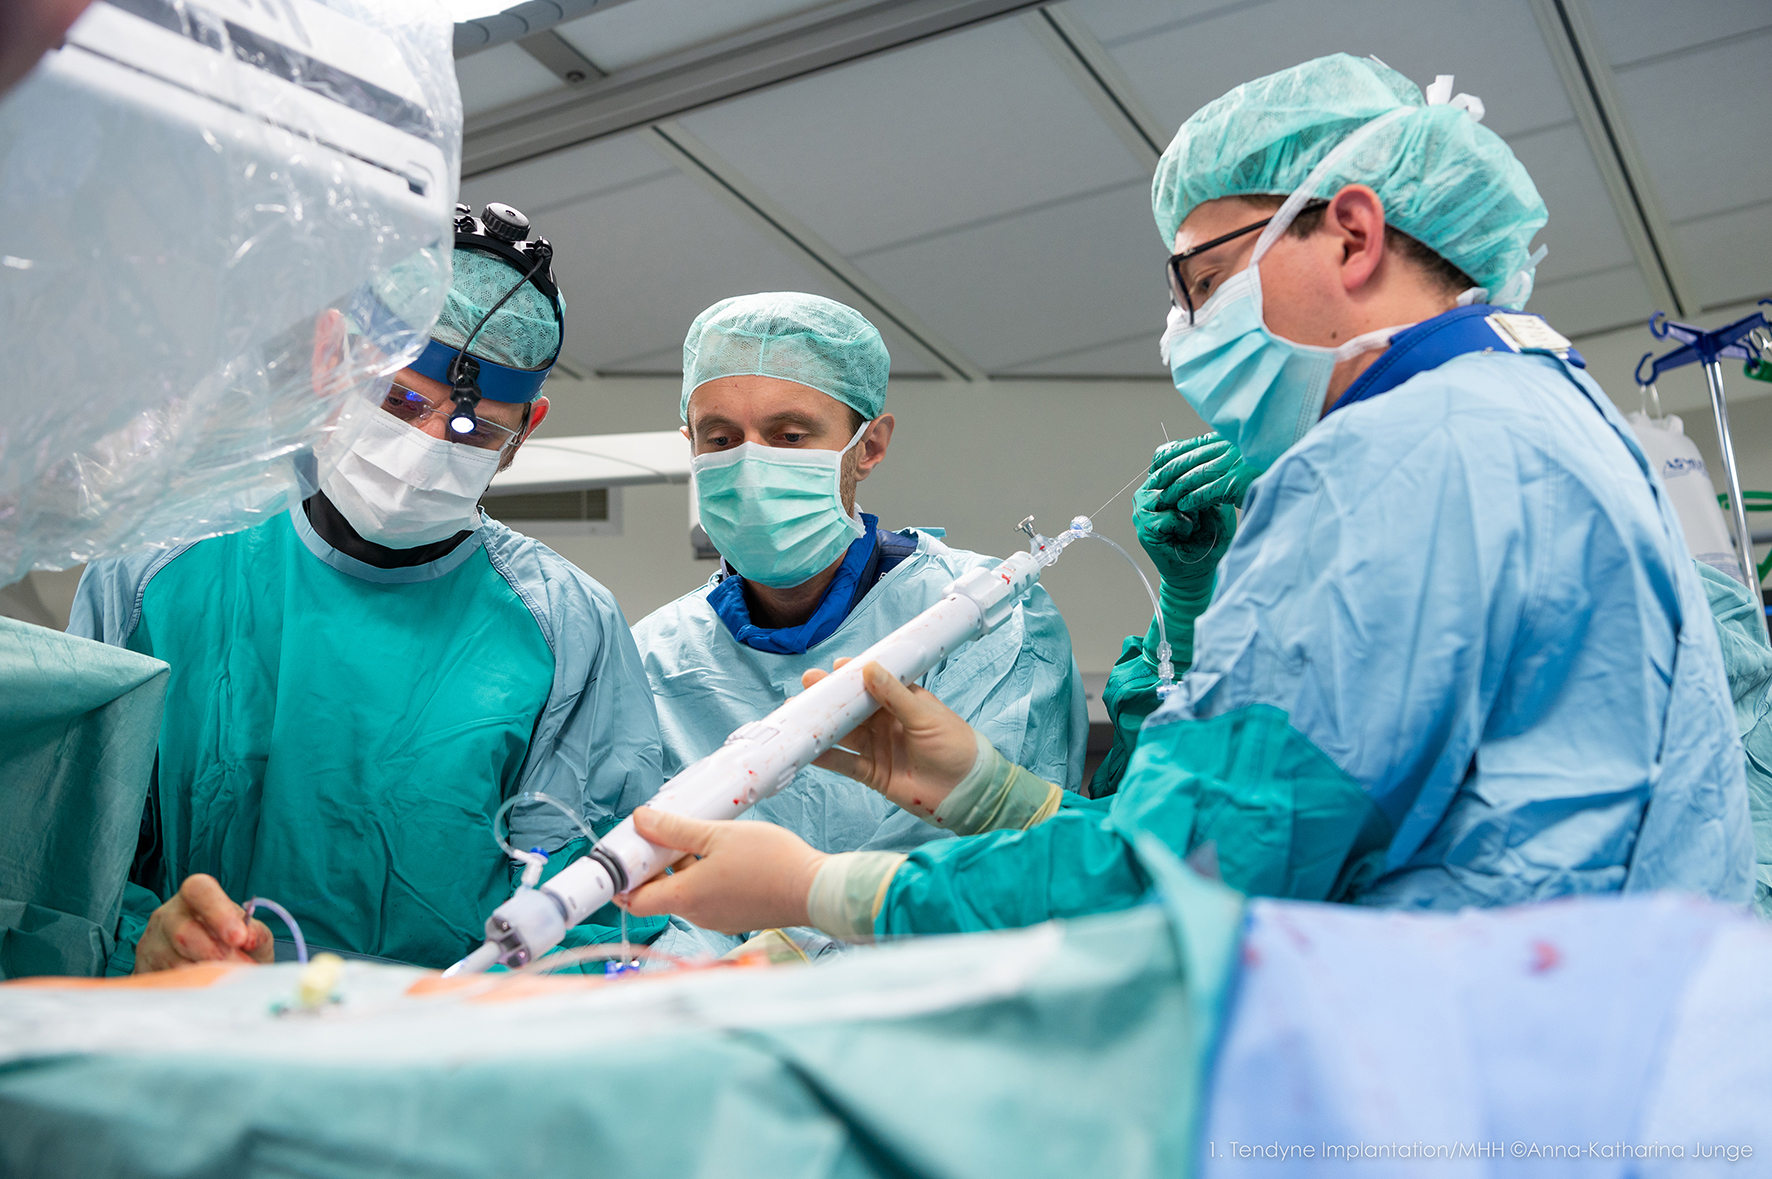 Ärzte in OP-Kleidung stehen an einem Eingriffstisch und führen mit Hilfe eines stabförmigen Katheter-Systems die Mitralklappen-Prothese ins Herz eines Patienten